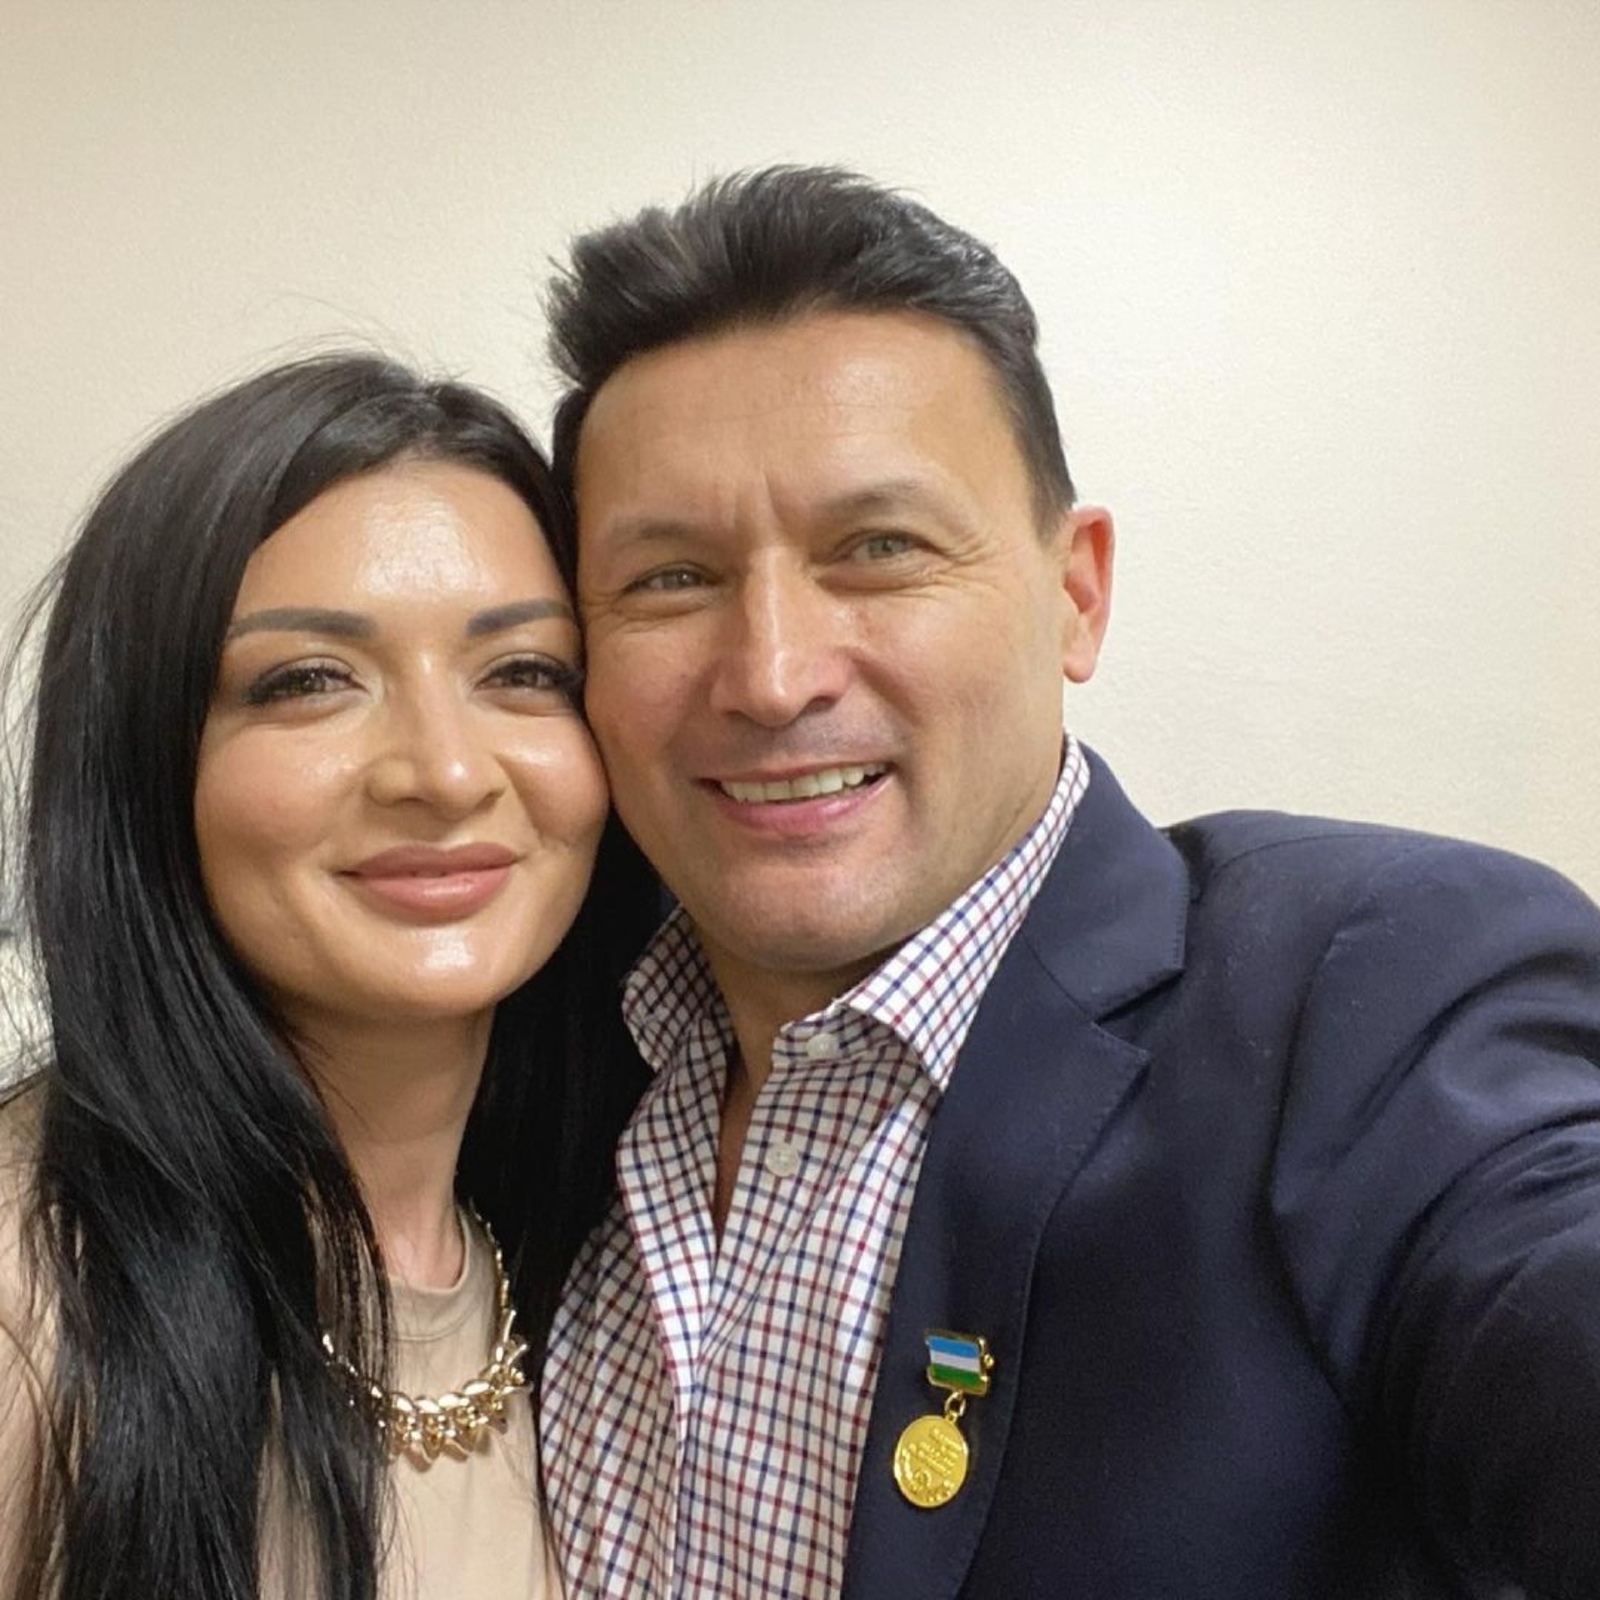 Башкирский певец Анвар Нургалиев высказался о гибели в ДТП своей племянницы Дианы Сафаровой